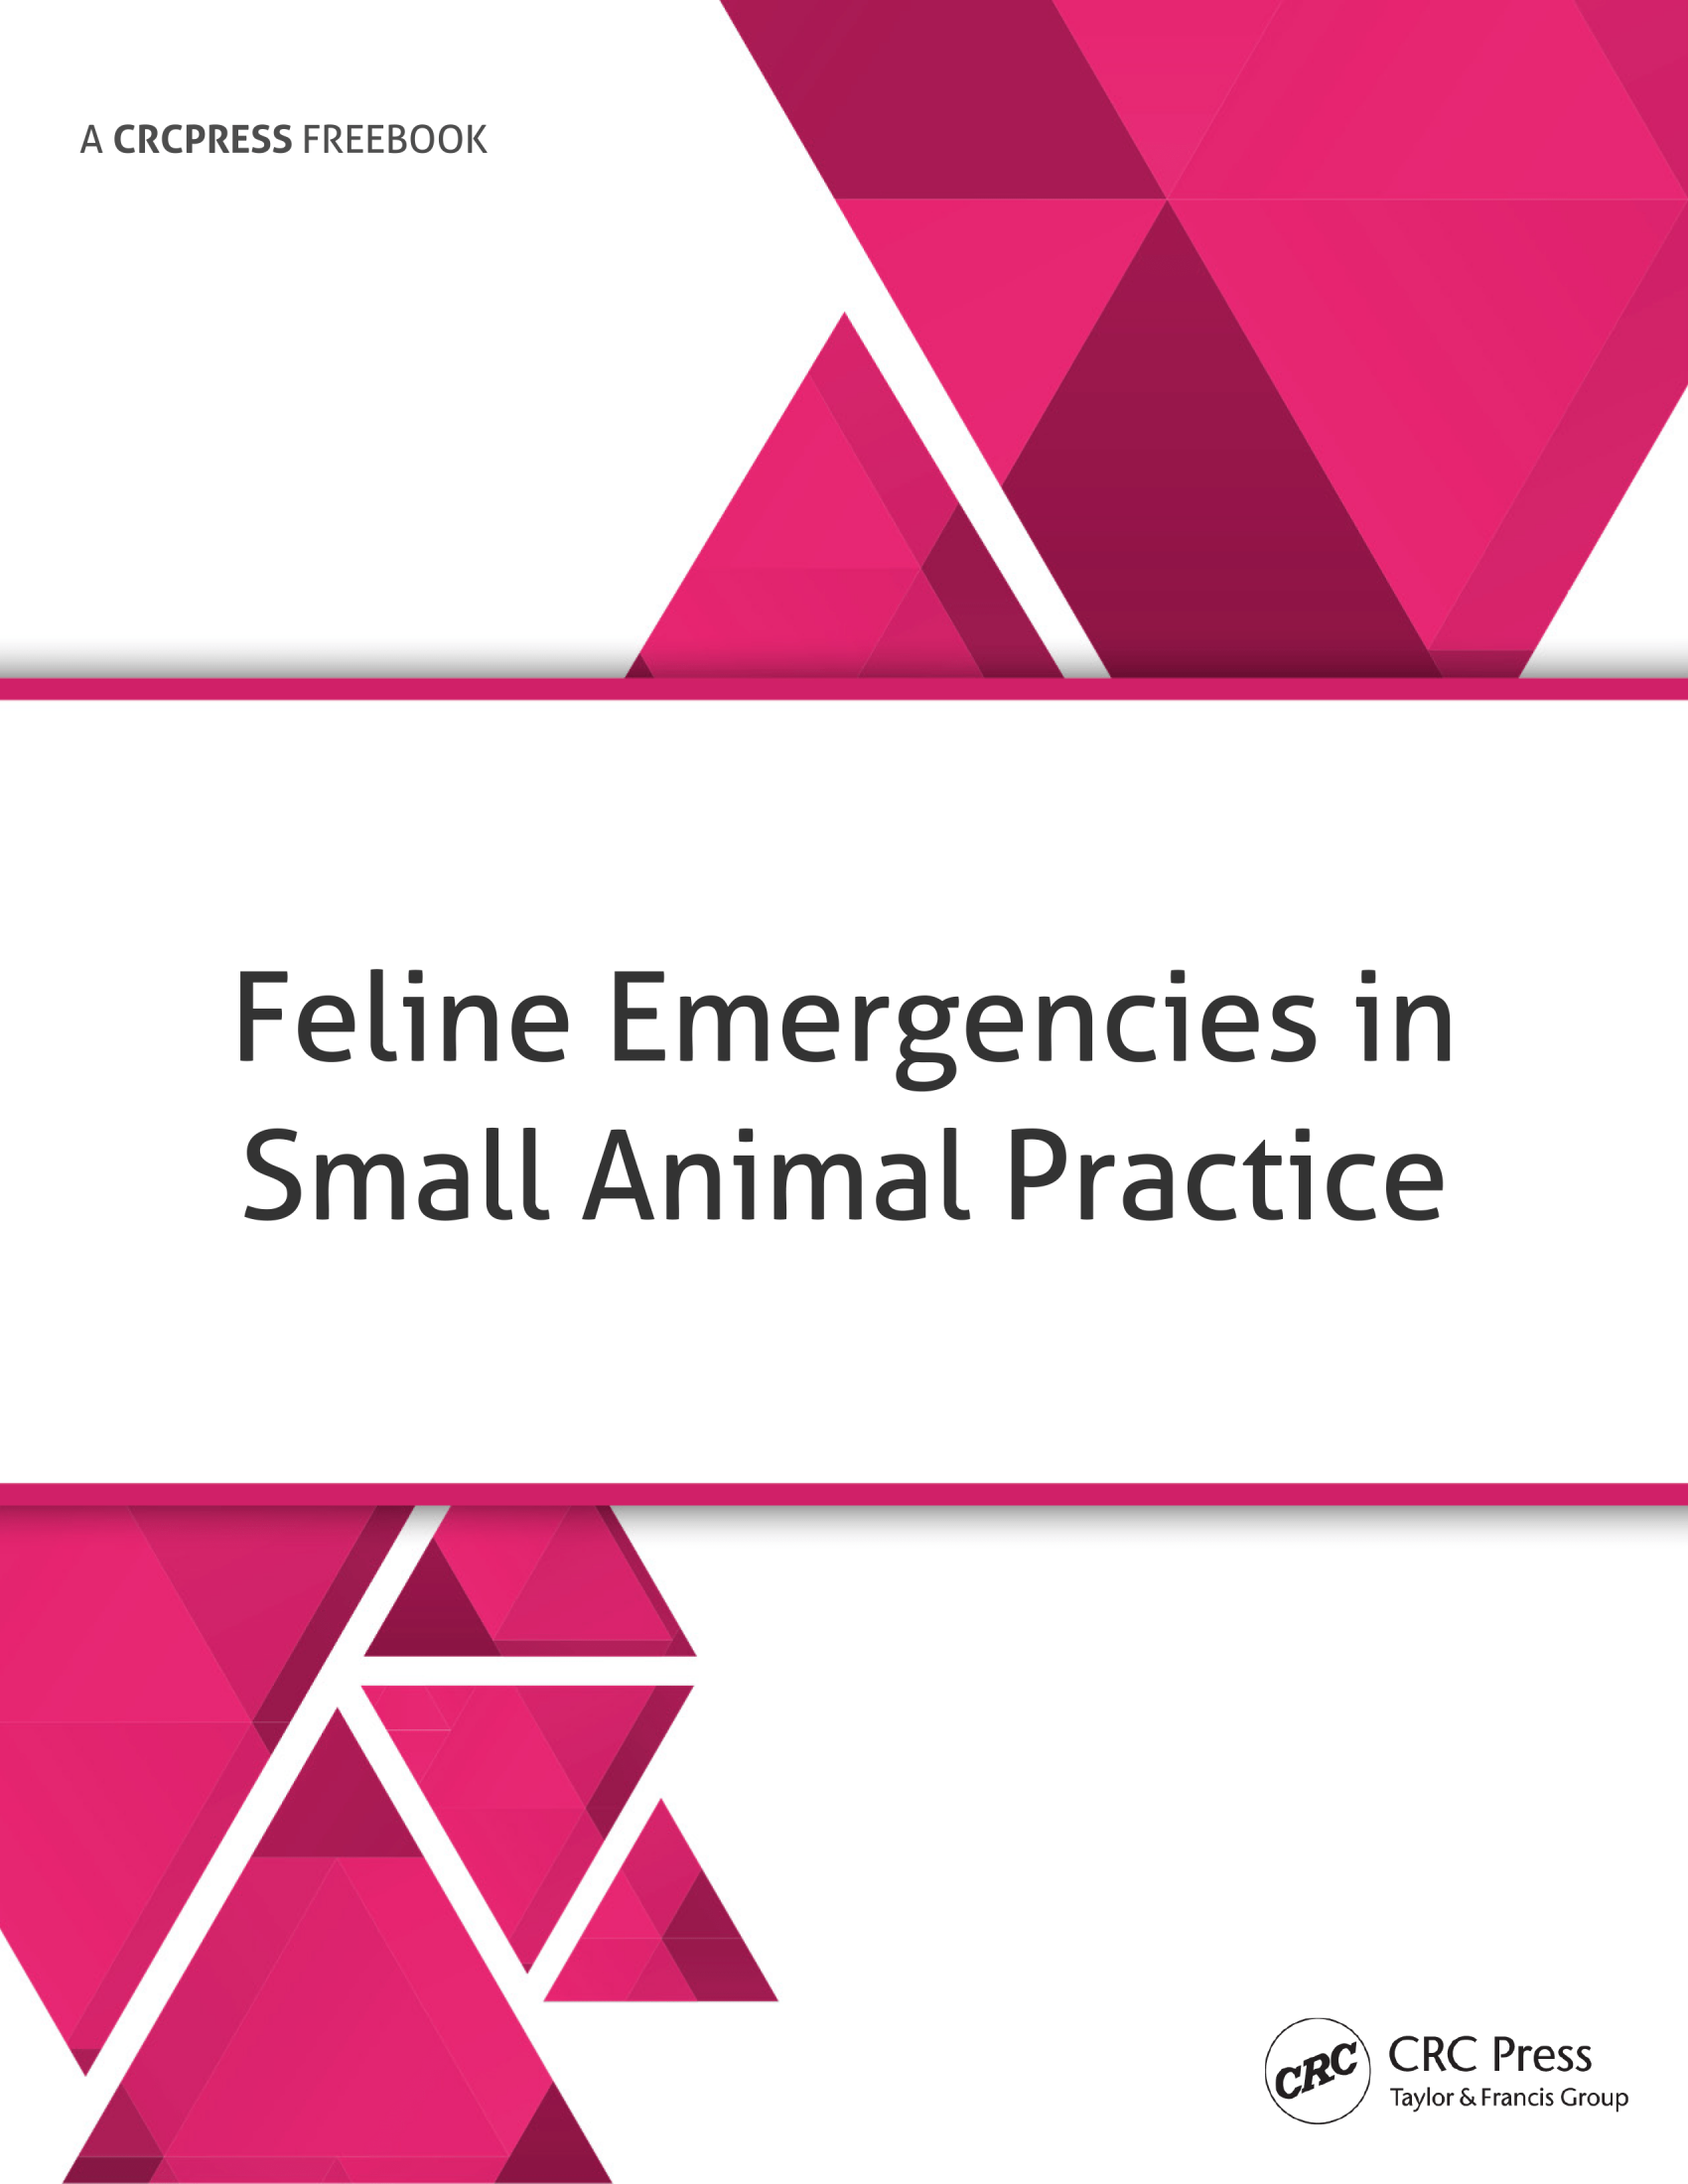 Feline Emergencies in Small Animal Practice Freebook